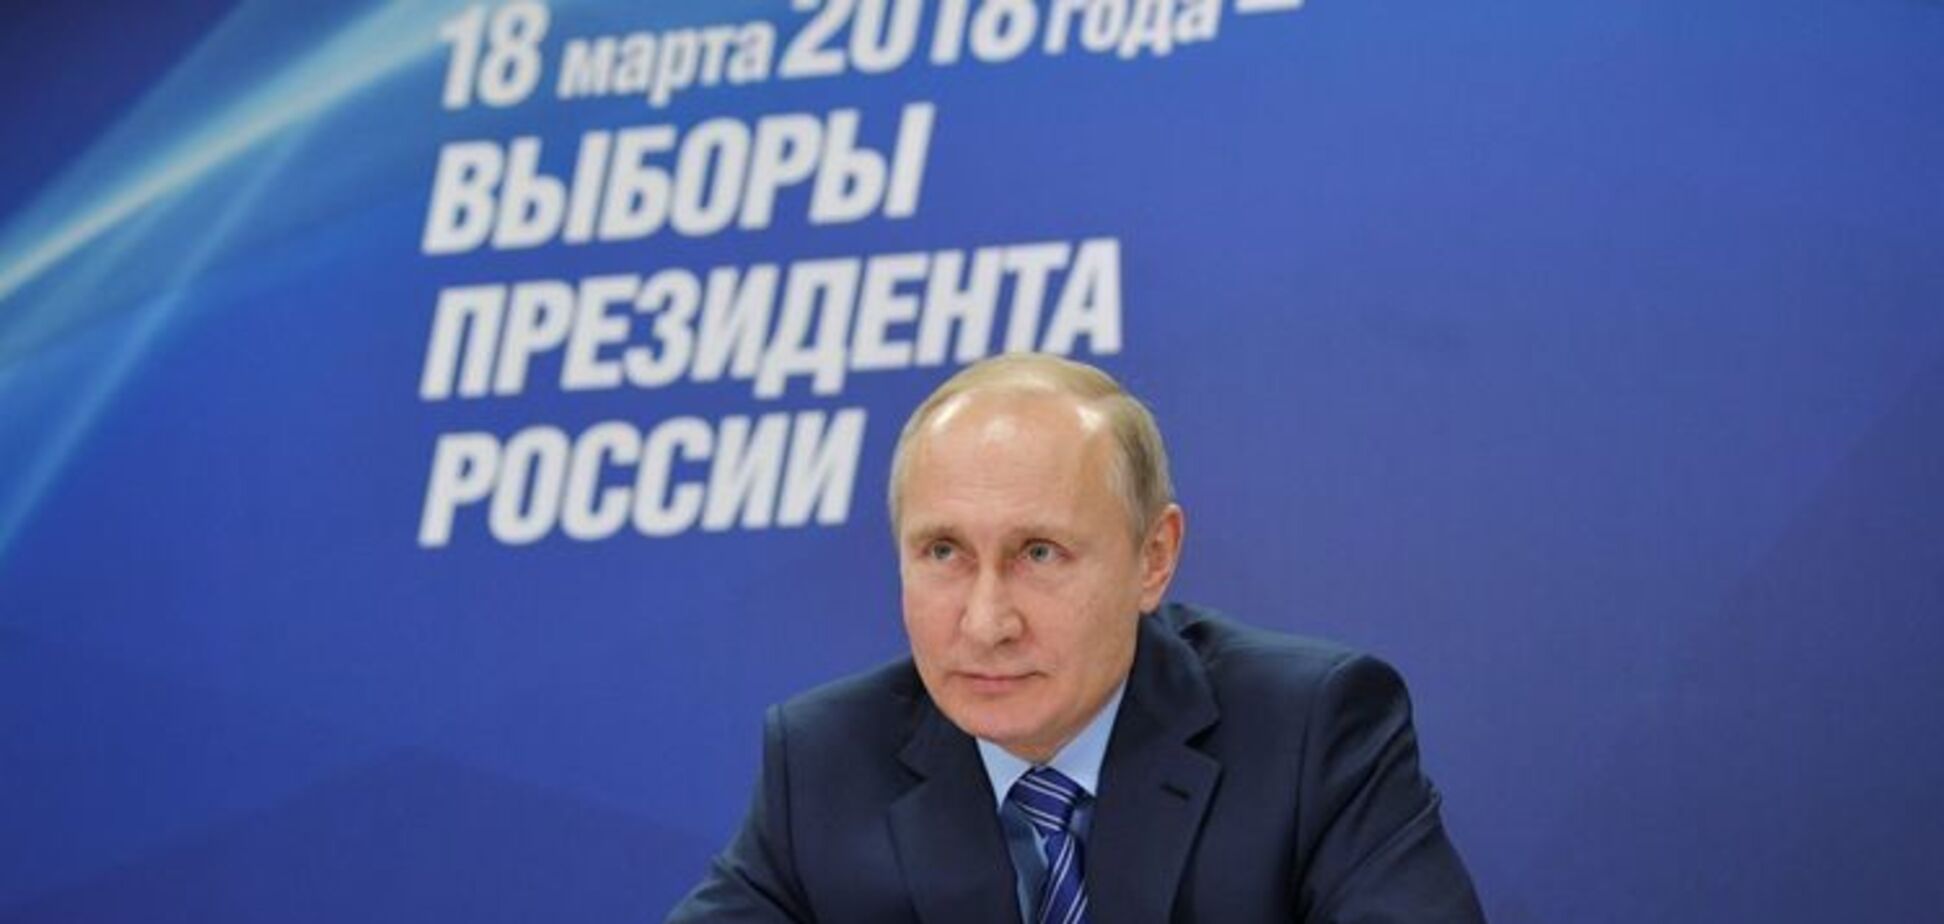 ''Путін збрехав'': названо причини падіння рейтингів президента РФ